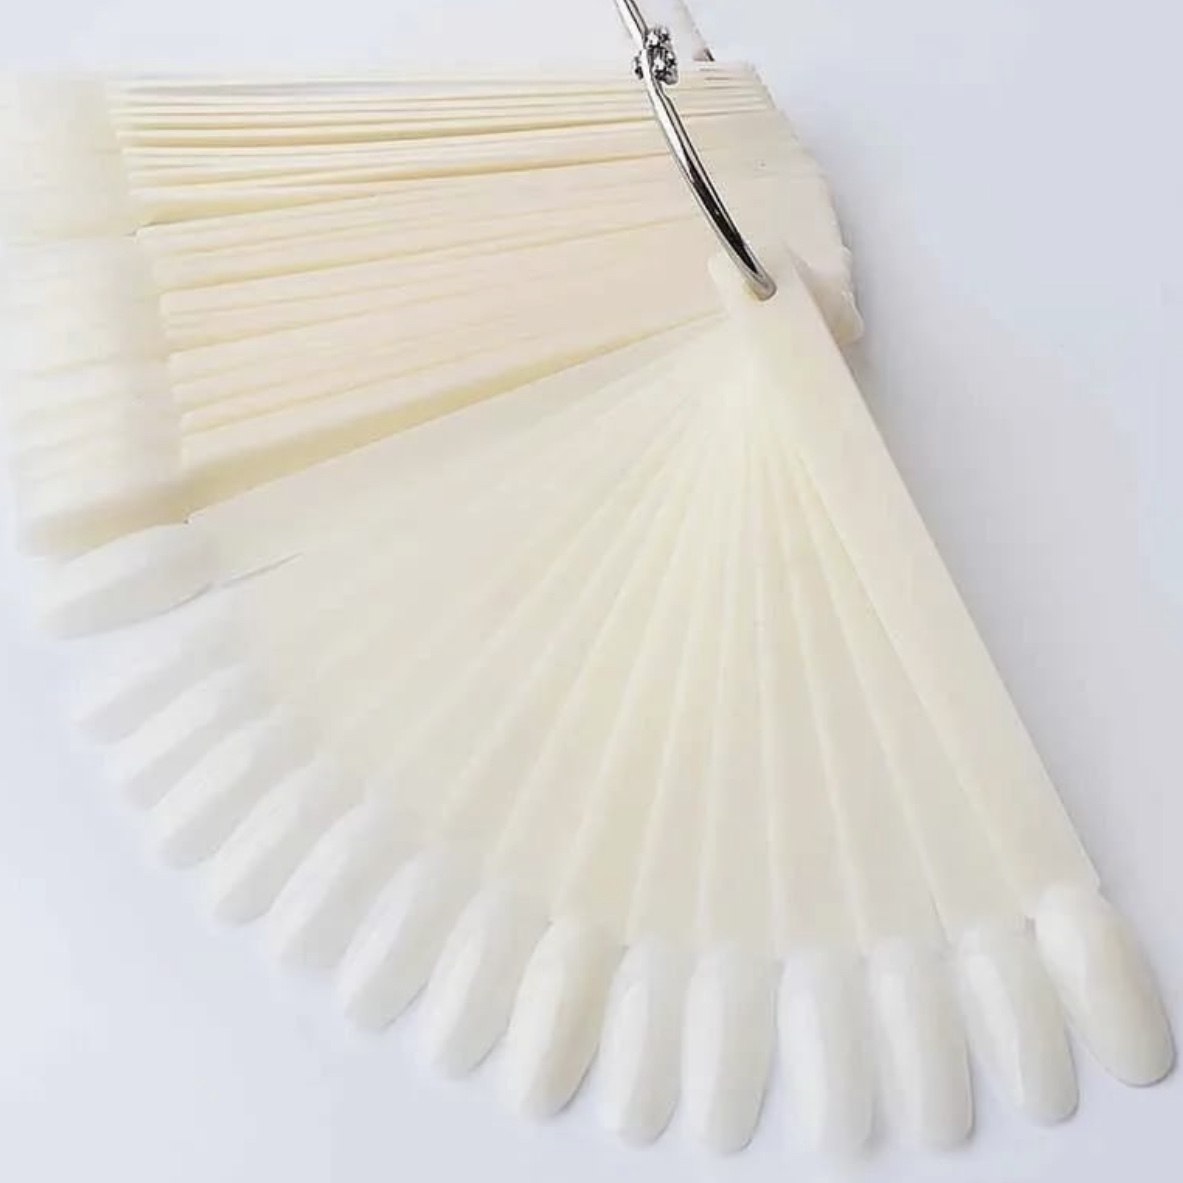 Палетки для лаков веер на кольце "семечки" белые (50 шт) в упаковке